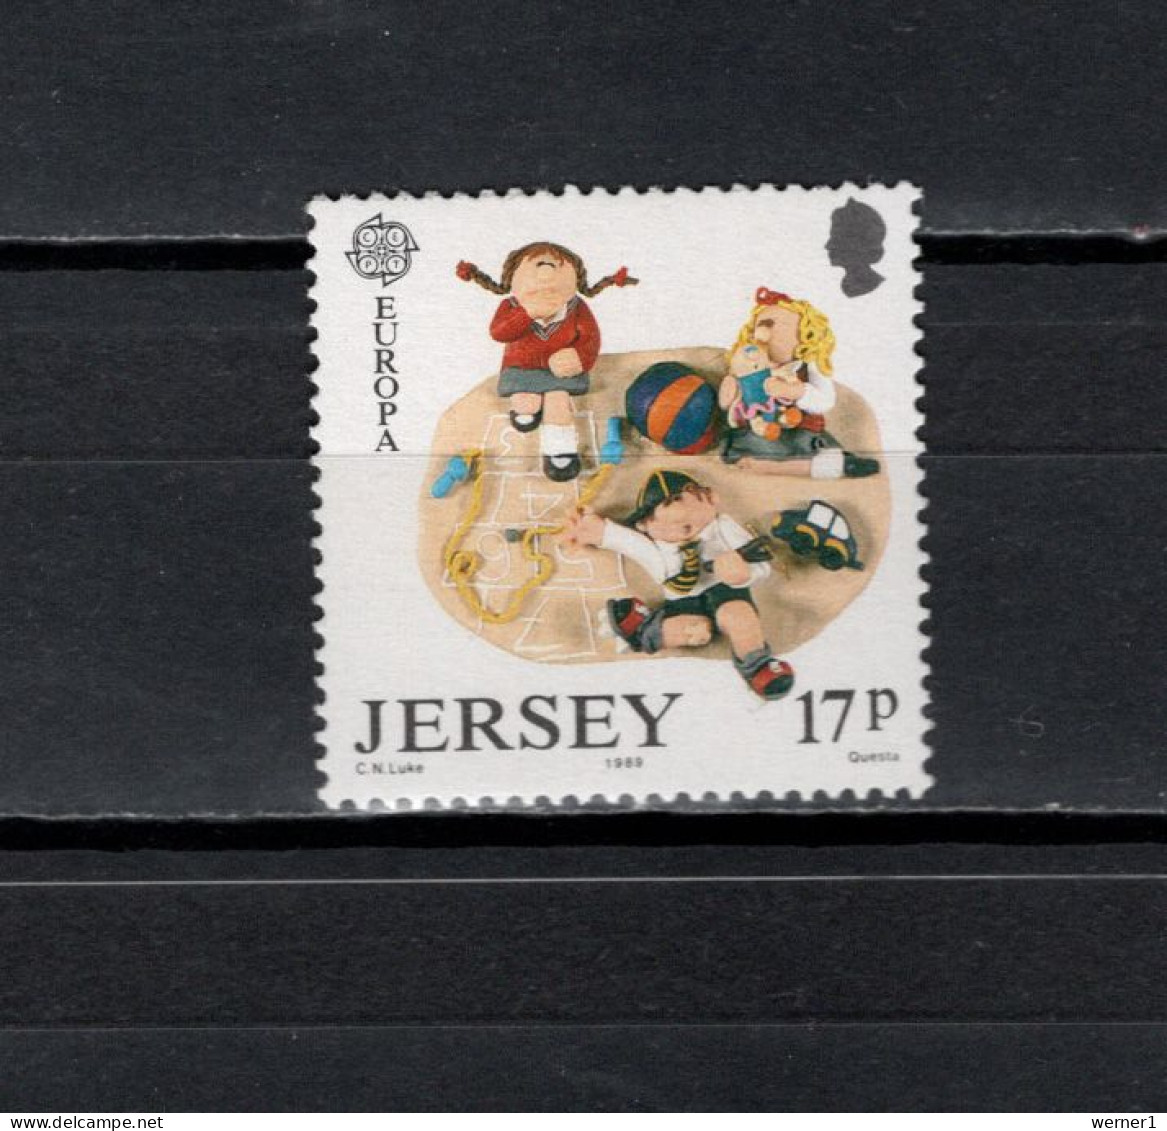 Jersey 1989 Football Soccer, Playing Children Stamp MNH - Ongebruikt